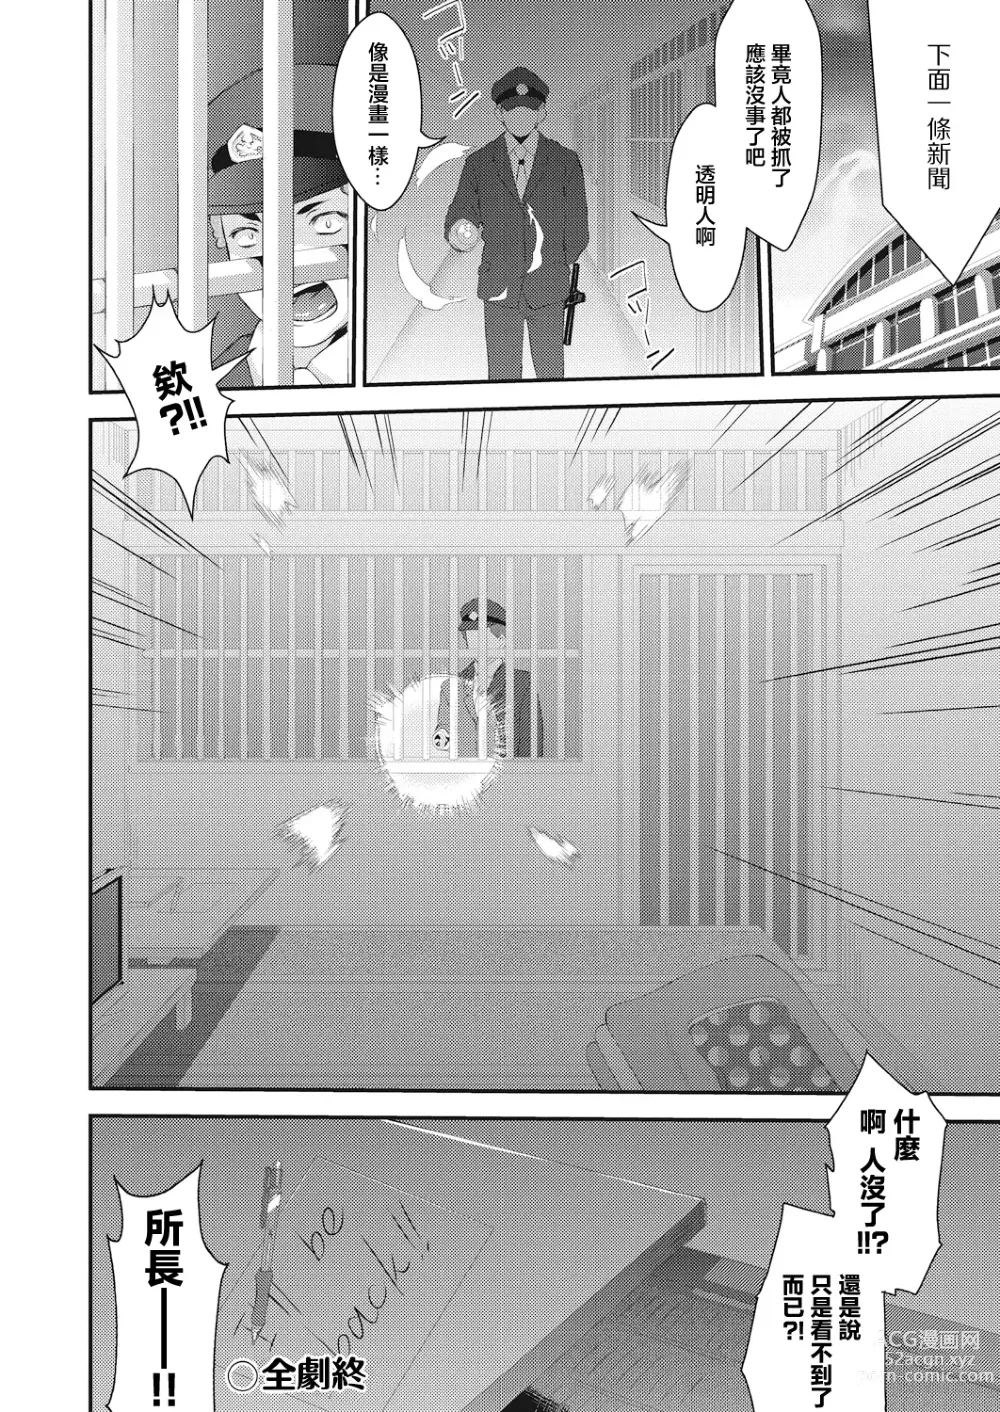 Page 26 of manga BOCCHI NO ZAMMA 3